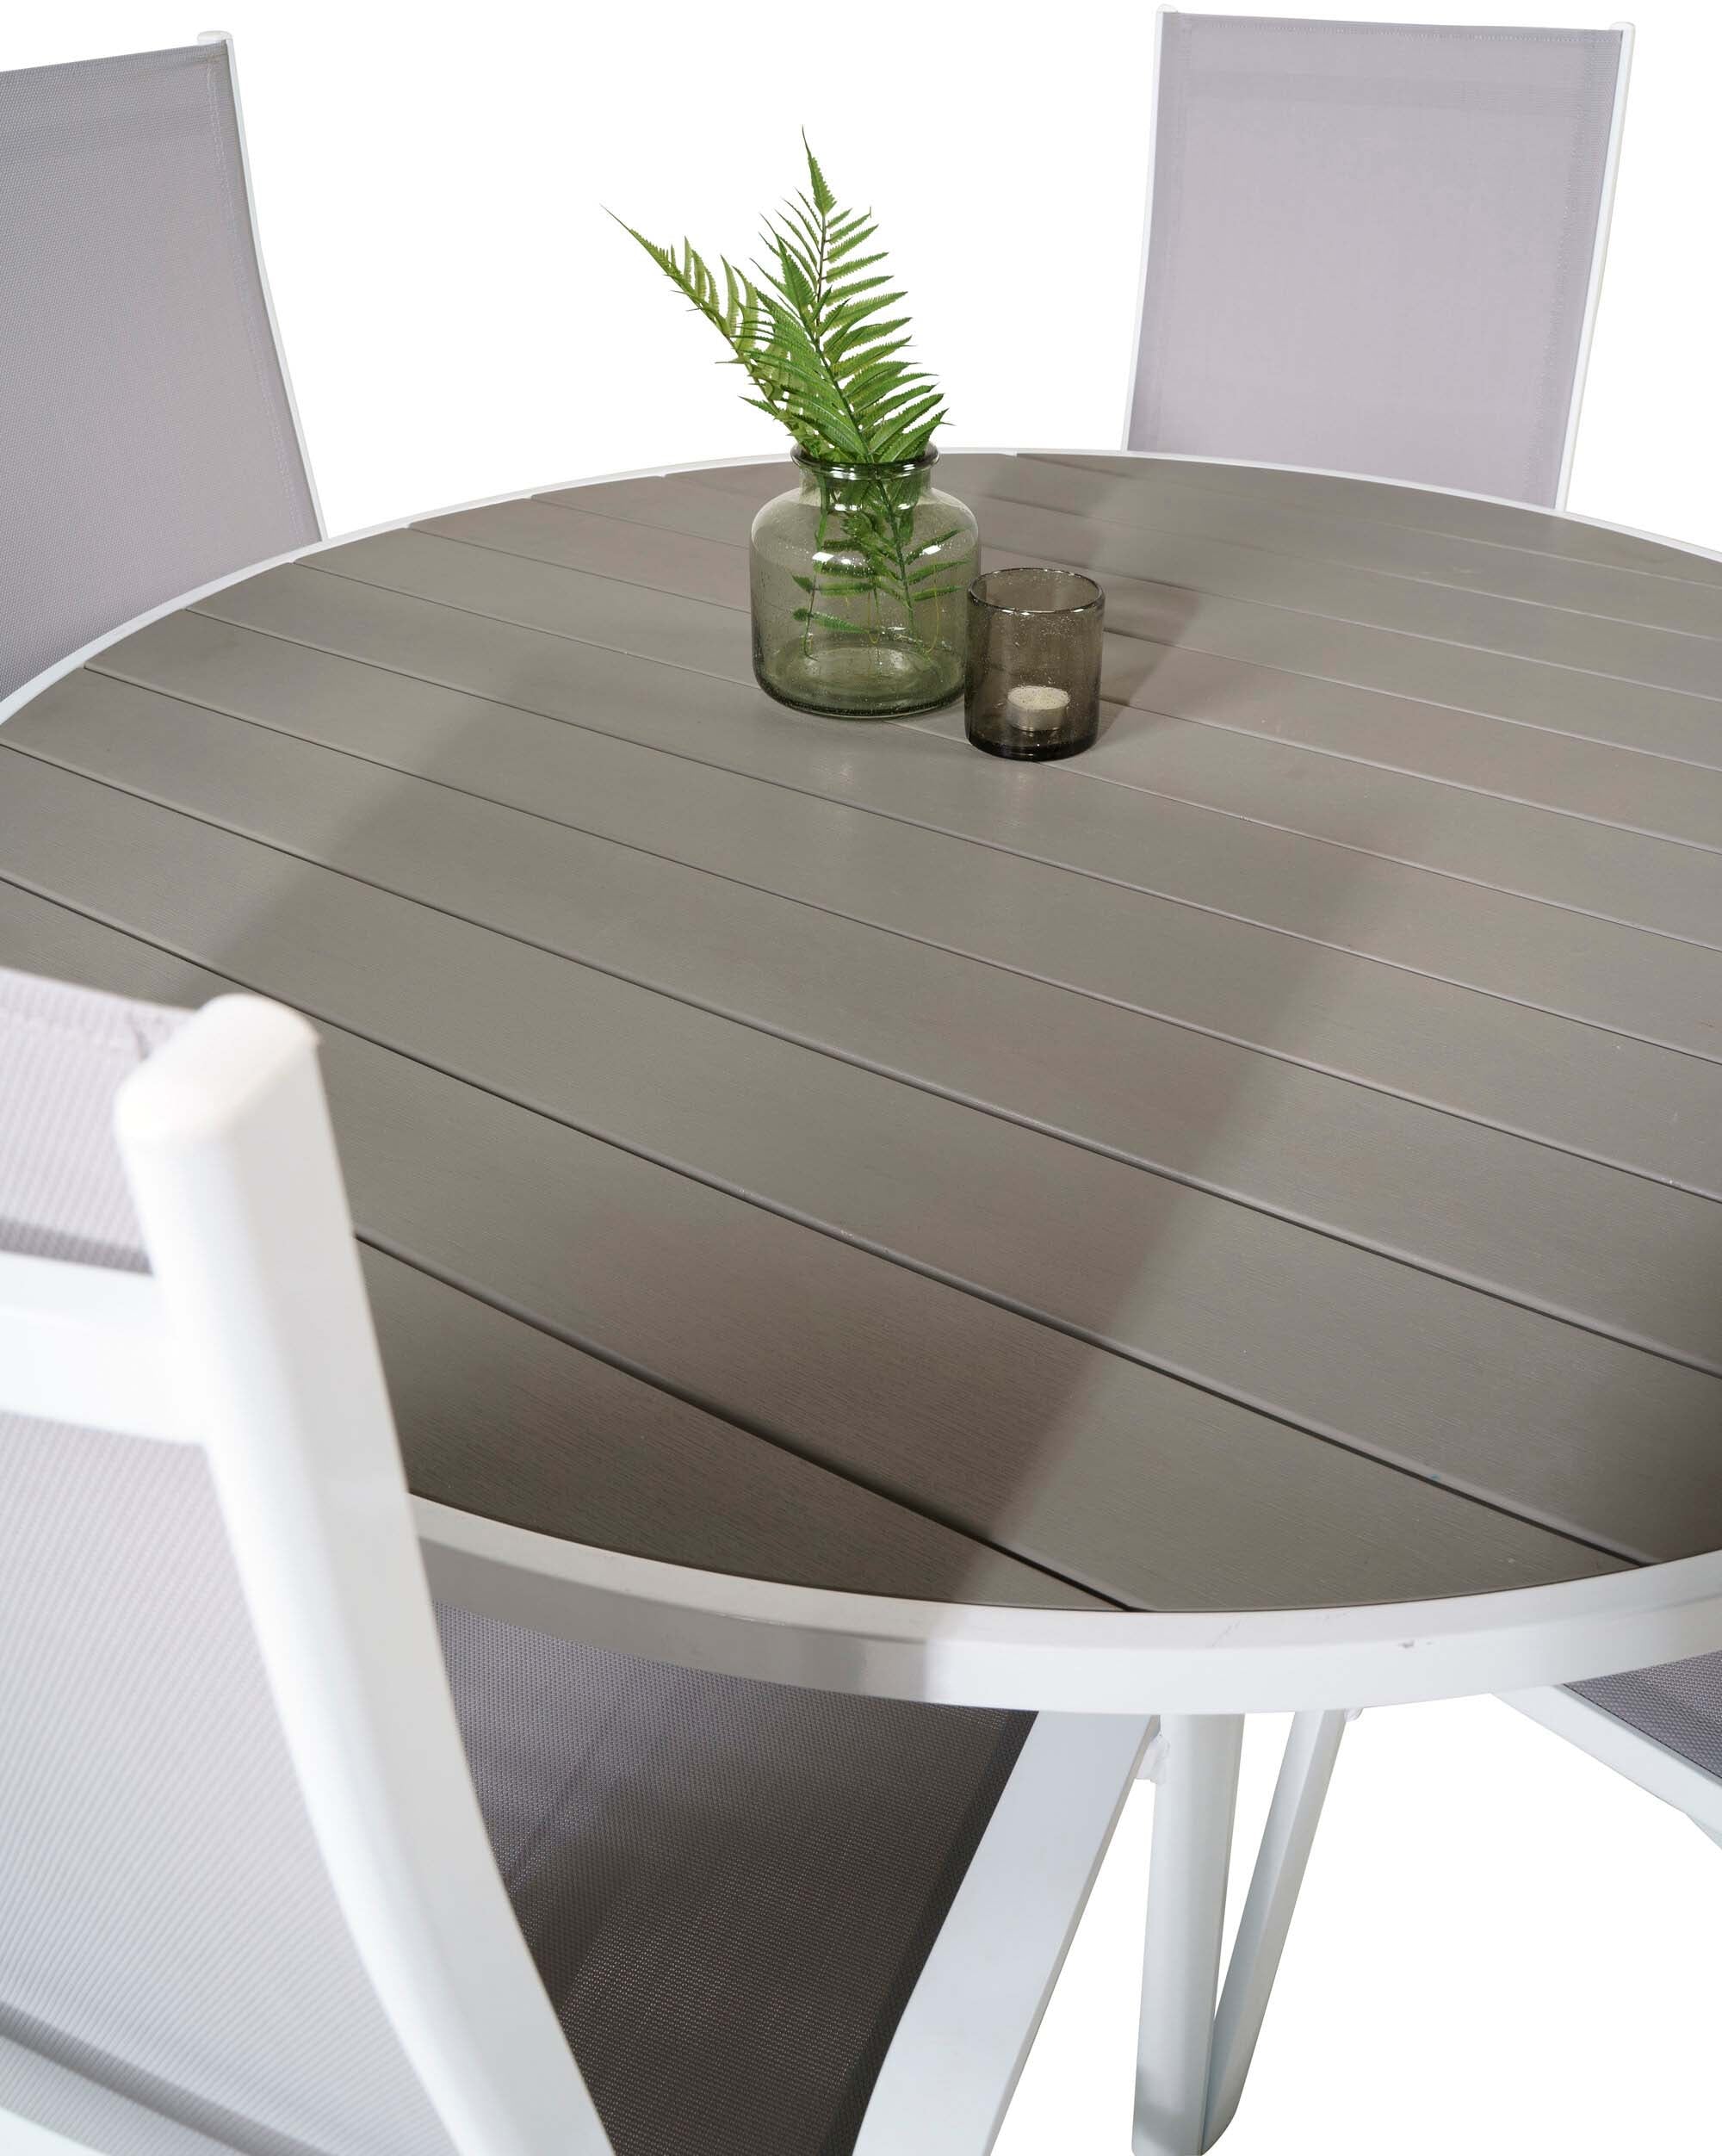 Parma Outdoor-Tischset + Copacabana ⌀140cm/4St. in Grau weiss präsentiert im Onlineshop von KAQTU Design AG. Gartentischset ist von Venture Home